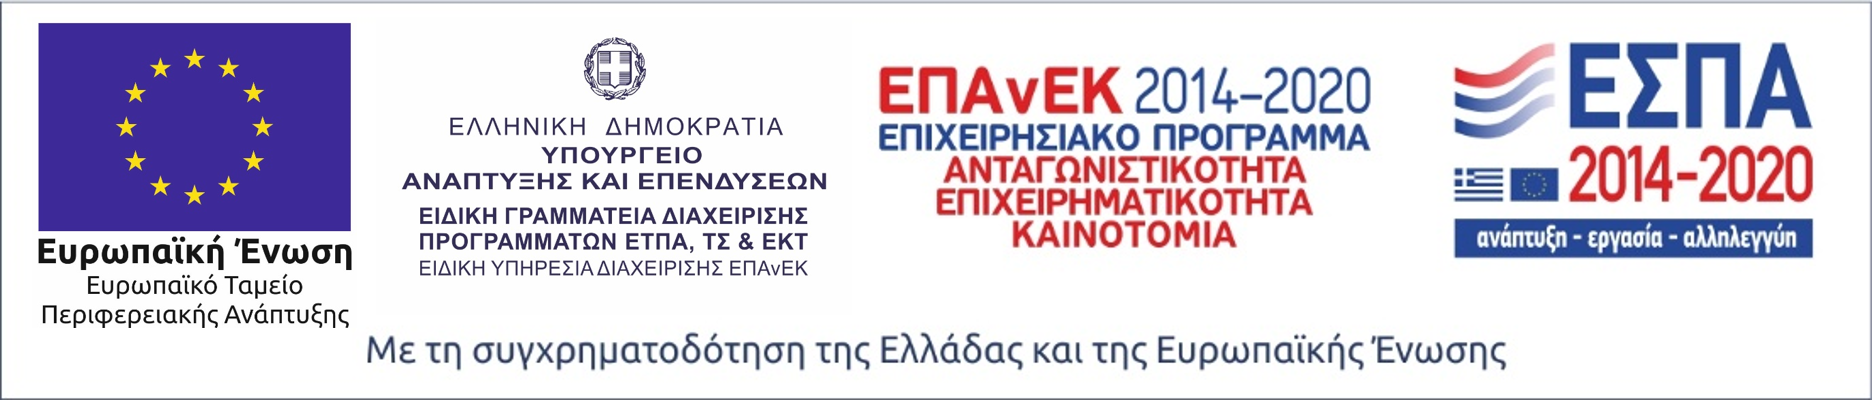 Λογότυπο ΕΣΠΑ 2014-2020 